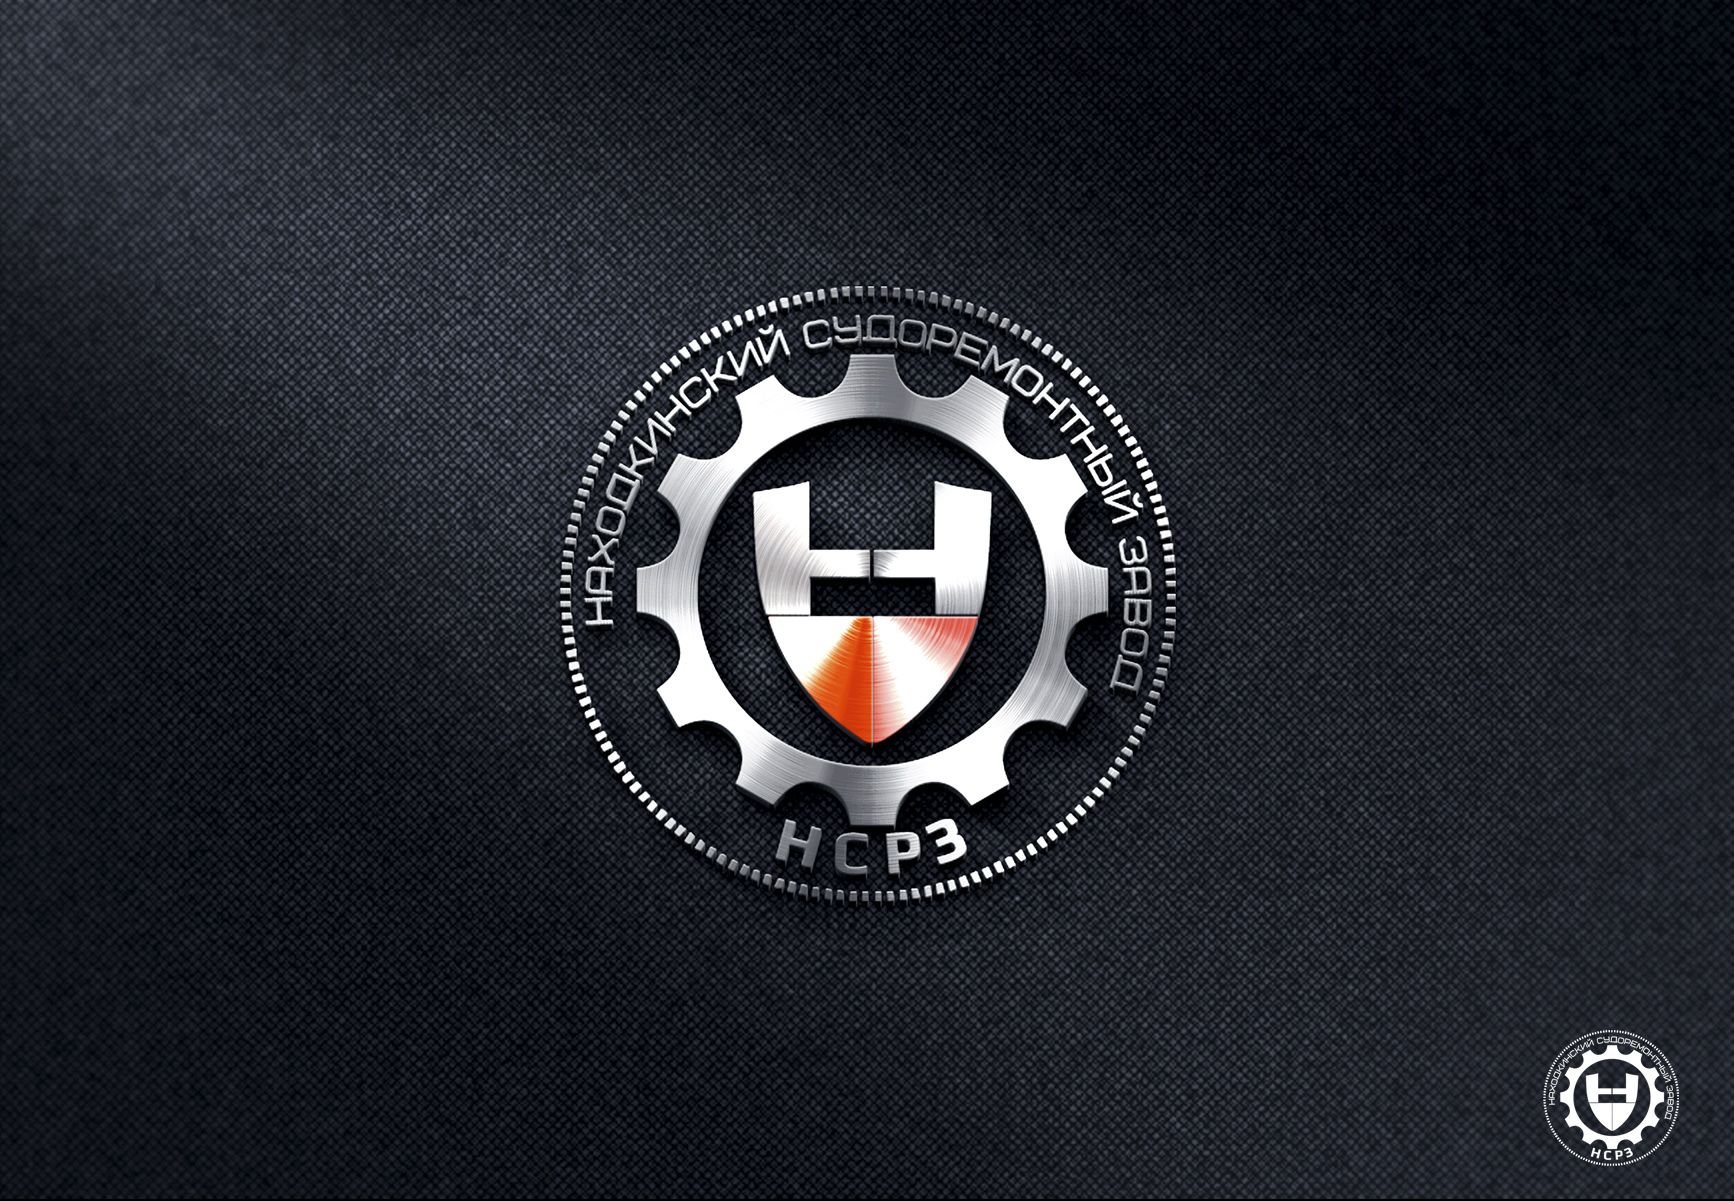 Лого и фирменный стиль для НСРЗ - дизайнер SmolinDenis